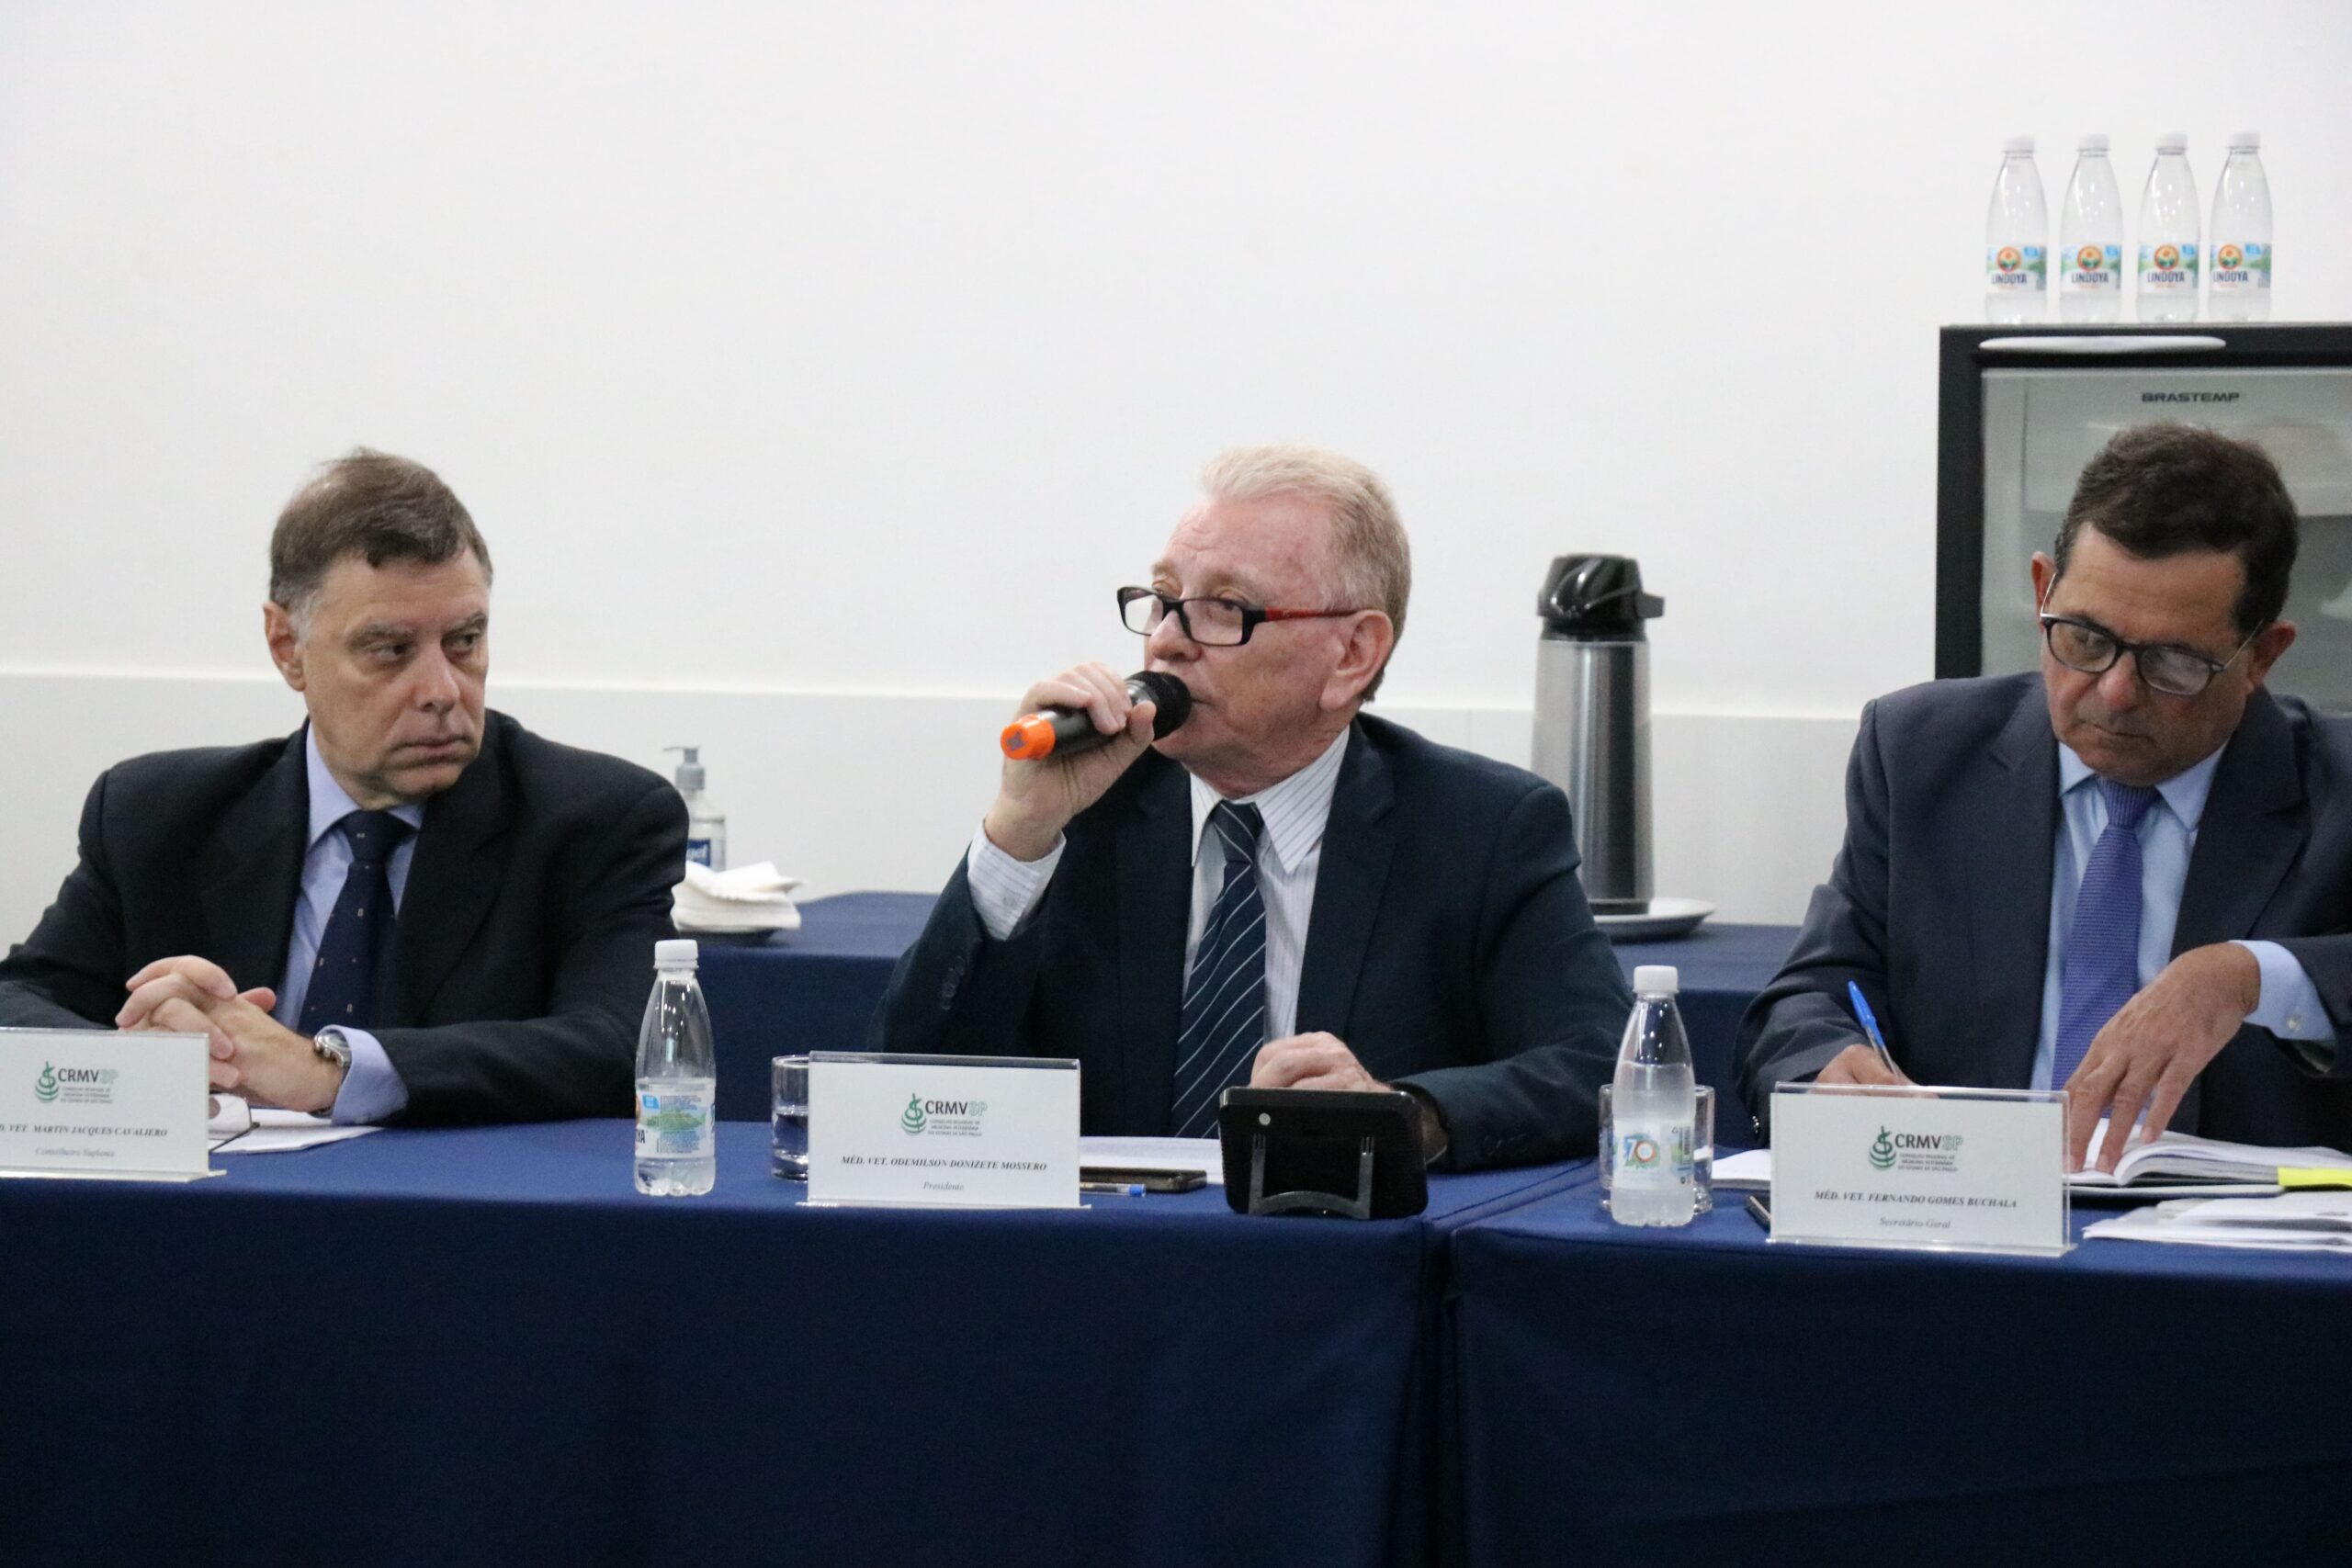 Na imagem aparecem três homens sentados atrás de uma mesa com toalha azul. Ao centro, o presidente do CRMV-SP, que fala ao microfone. A esquerda da foto, o conselheiro, e a direita, o secretário-geral.